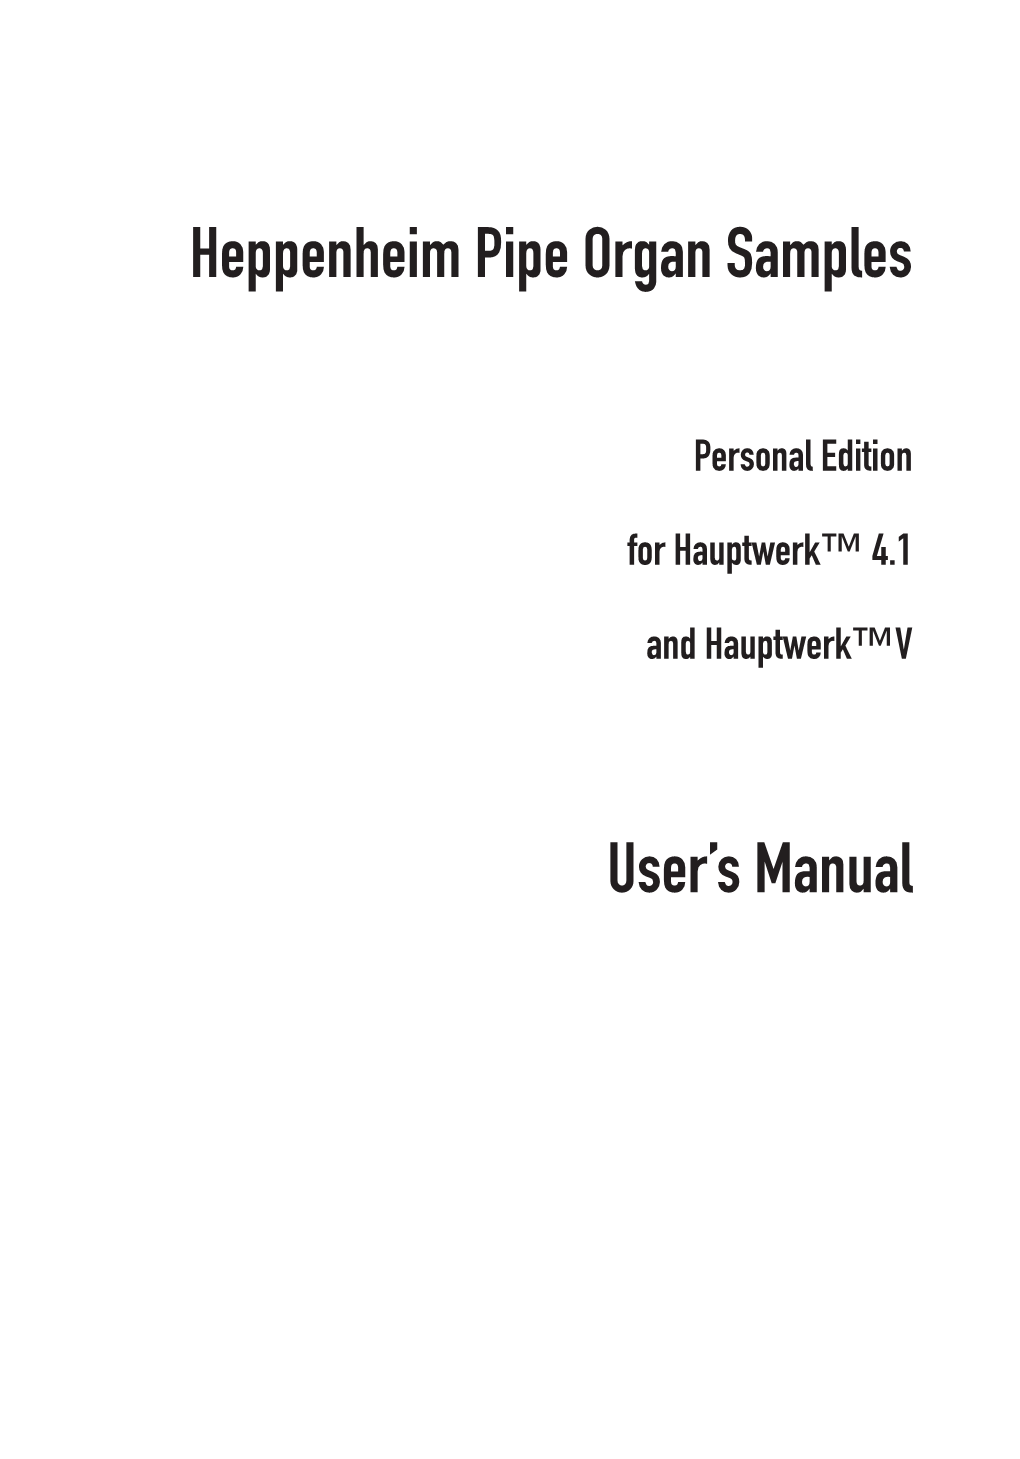 Heppenheim Pipe Organ Samples User's Manual